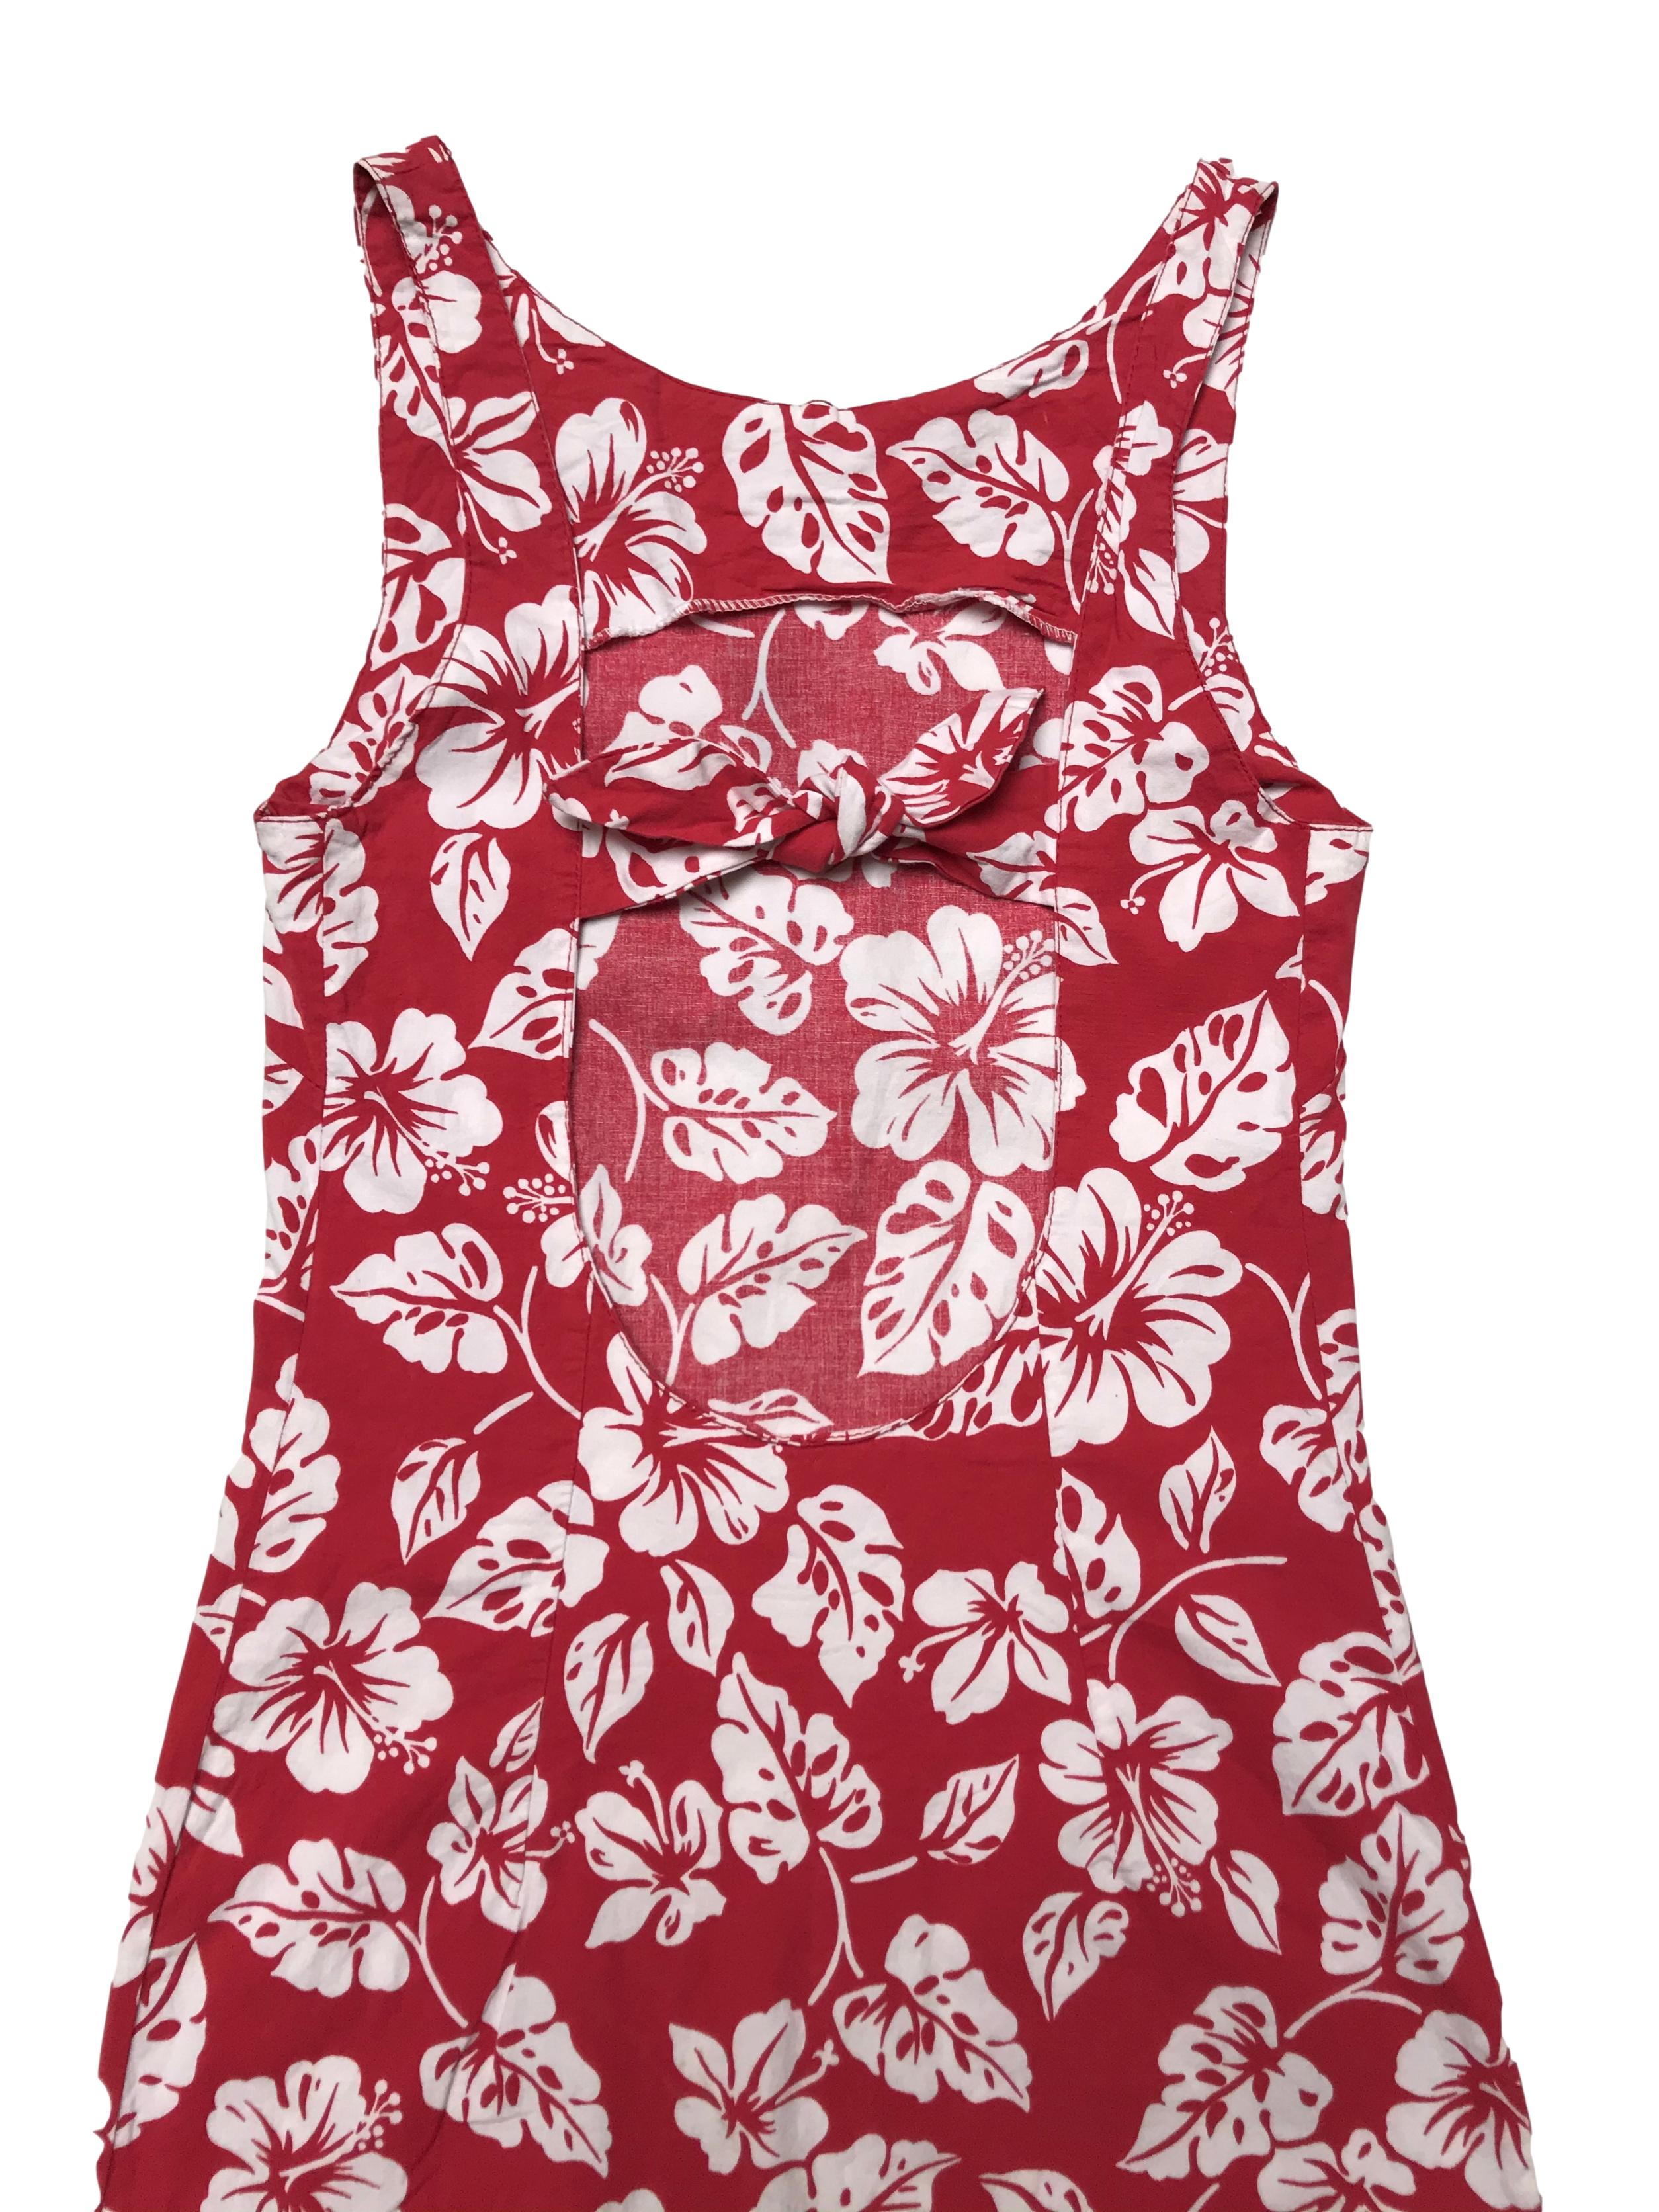 Vestido rojo ligeramente stretch con print tropical blanco, escote en la espalda con lazo, tela tipo algodón camisa con spandex. Largo 88cm